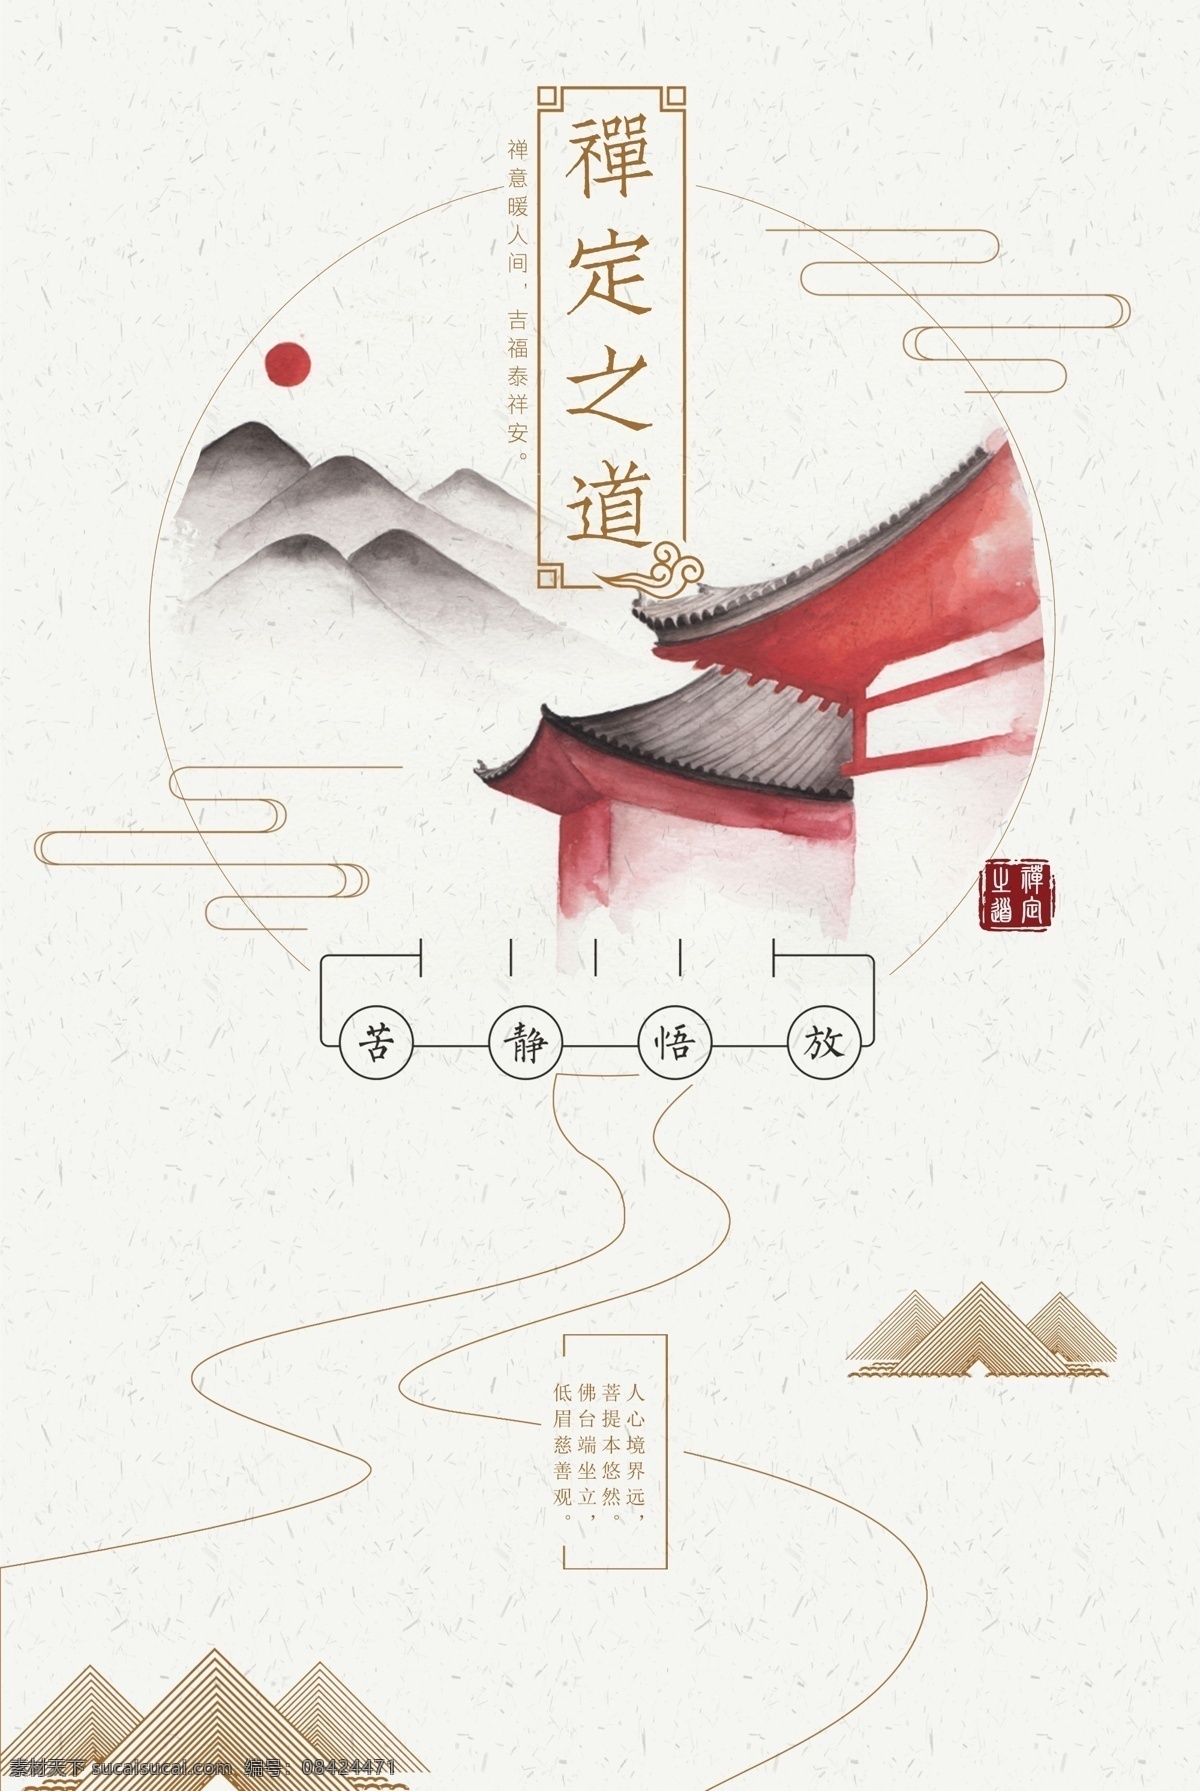 中国风素材 样机模版展示 logo样机 品牌标示 分层 logo设计